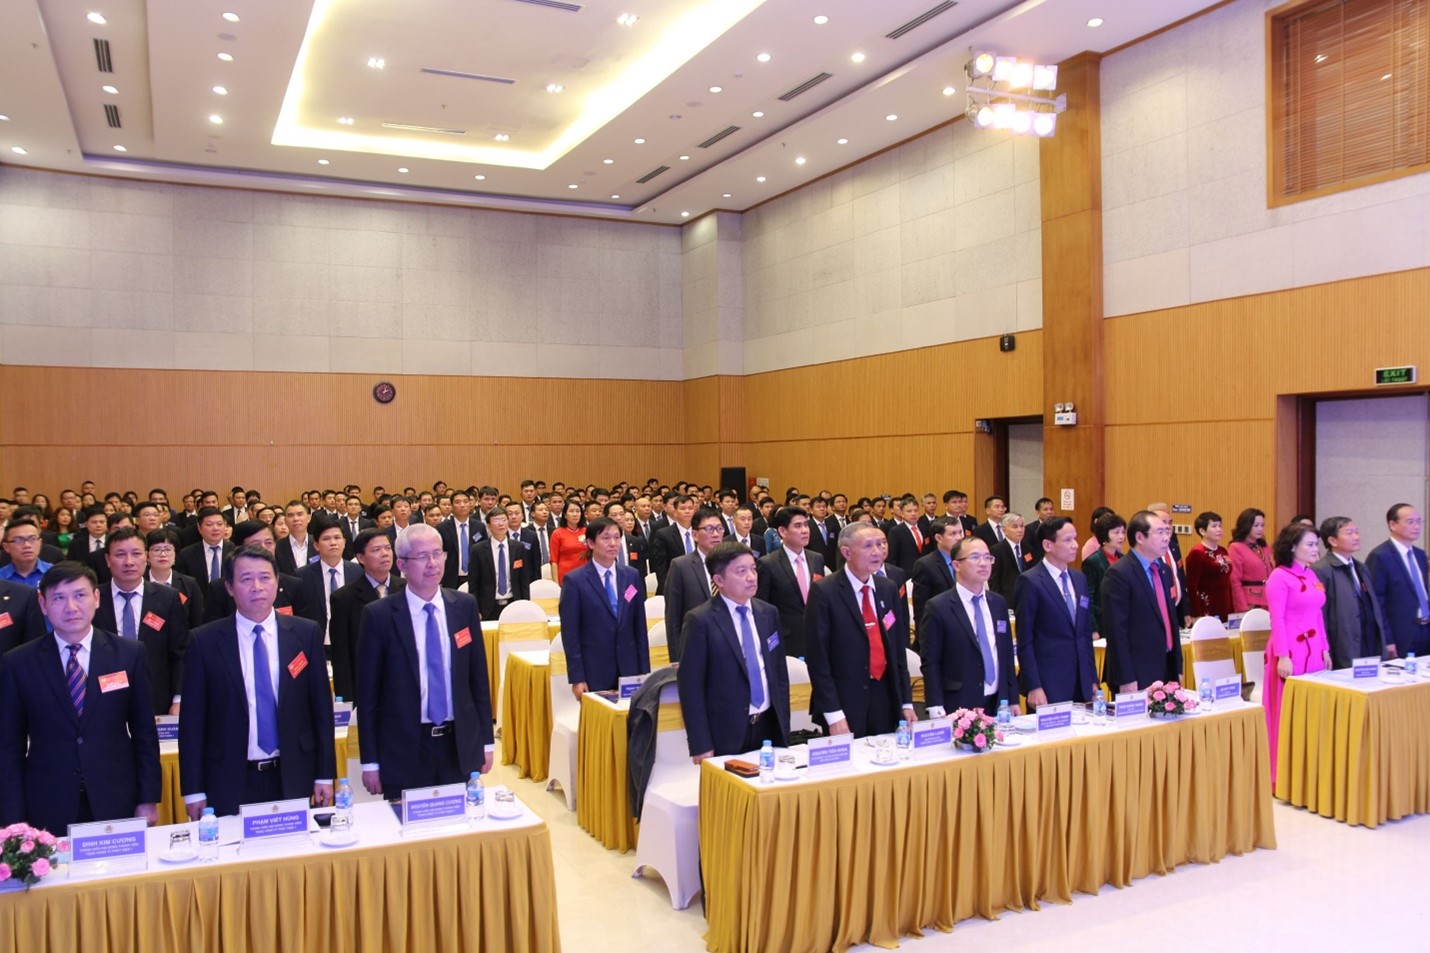 Công đoàn Tổng công ty phát điện 1 tổ chức thành công đại hội lần thứ II, nhiệm kỳ 2022 - 2027